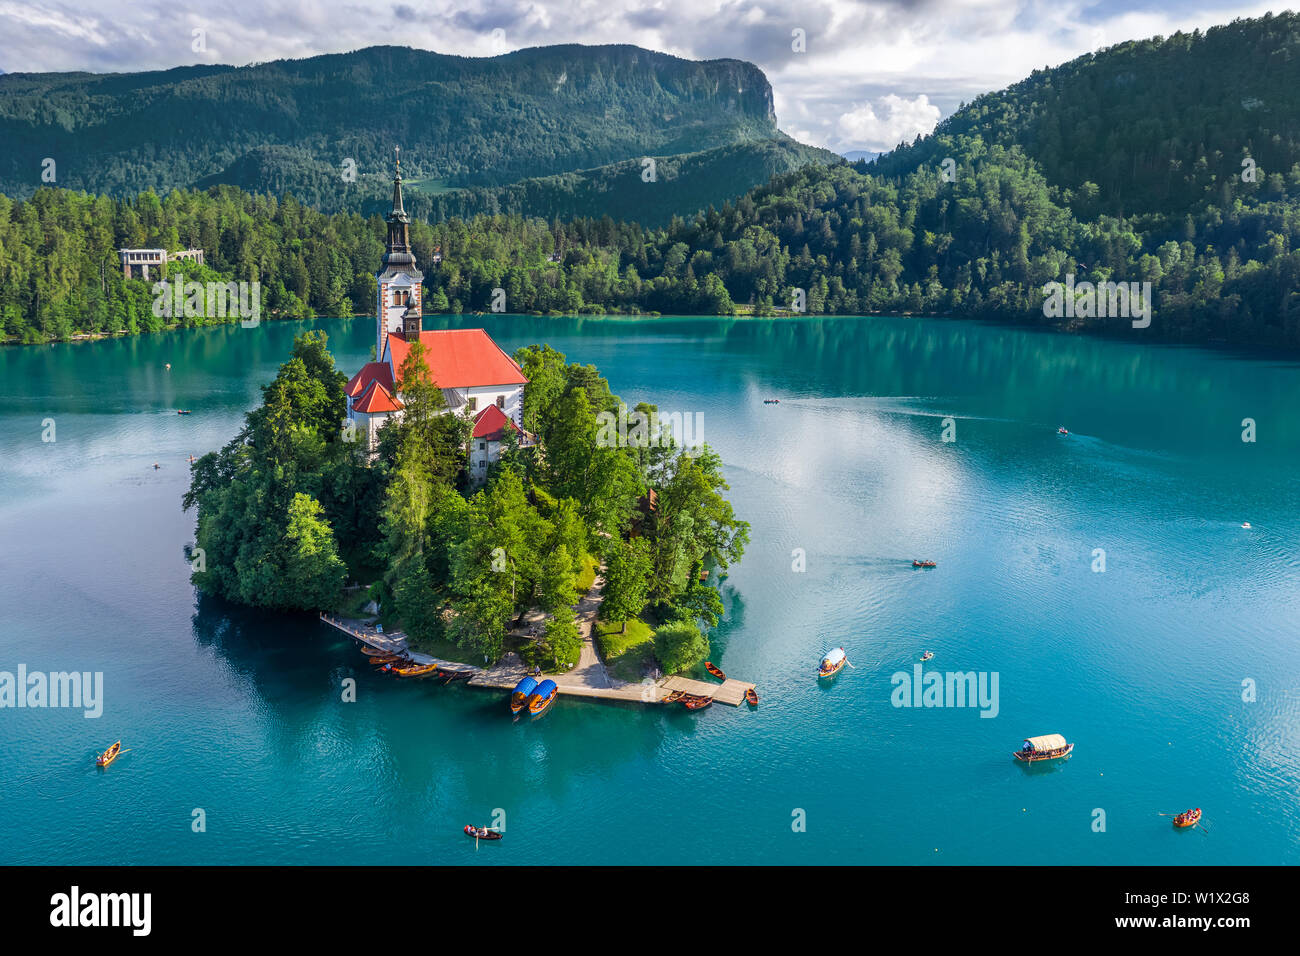 Der See von Bled, Slowenien - Luftbild des schönen Sees Bled (Blejsko Jezero) mit der Wallfahrtskirche Mariä Himmelfahrt der Maria auf einer kleinen Insel und Stockfoto